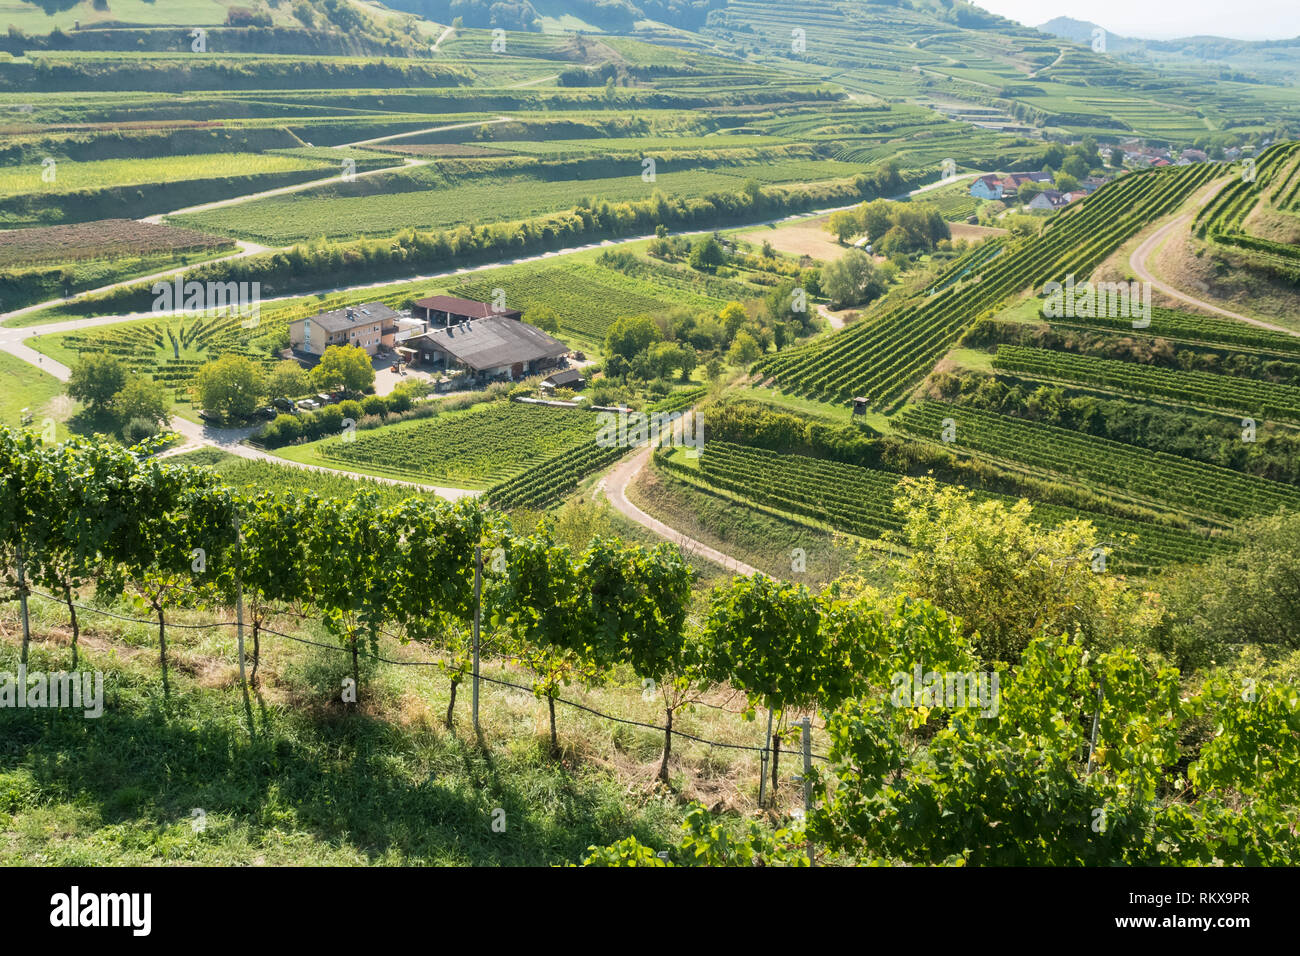 Bodega Schatzle rodeado por viñas en terrazas volcánicas en el Kaiserstuhl distrito vitivinícola en la región vinícola de Baden del suroeste de Alemania Foto de stock